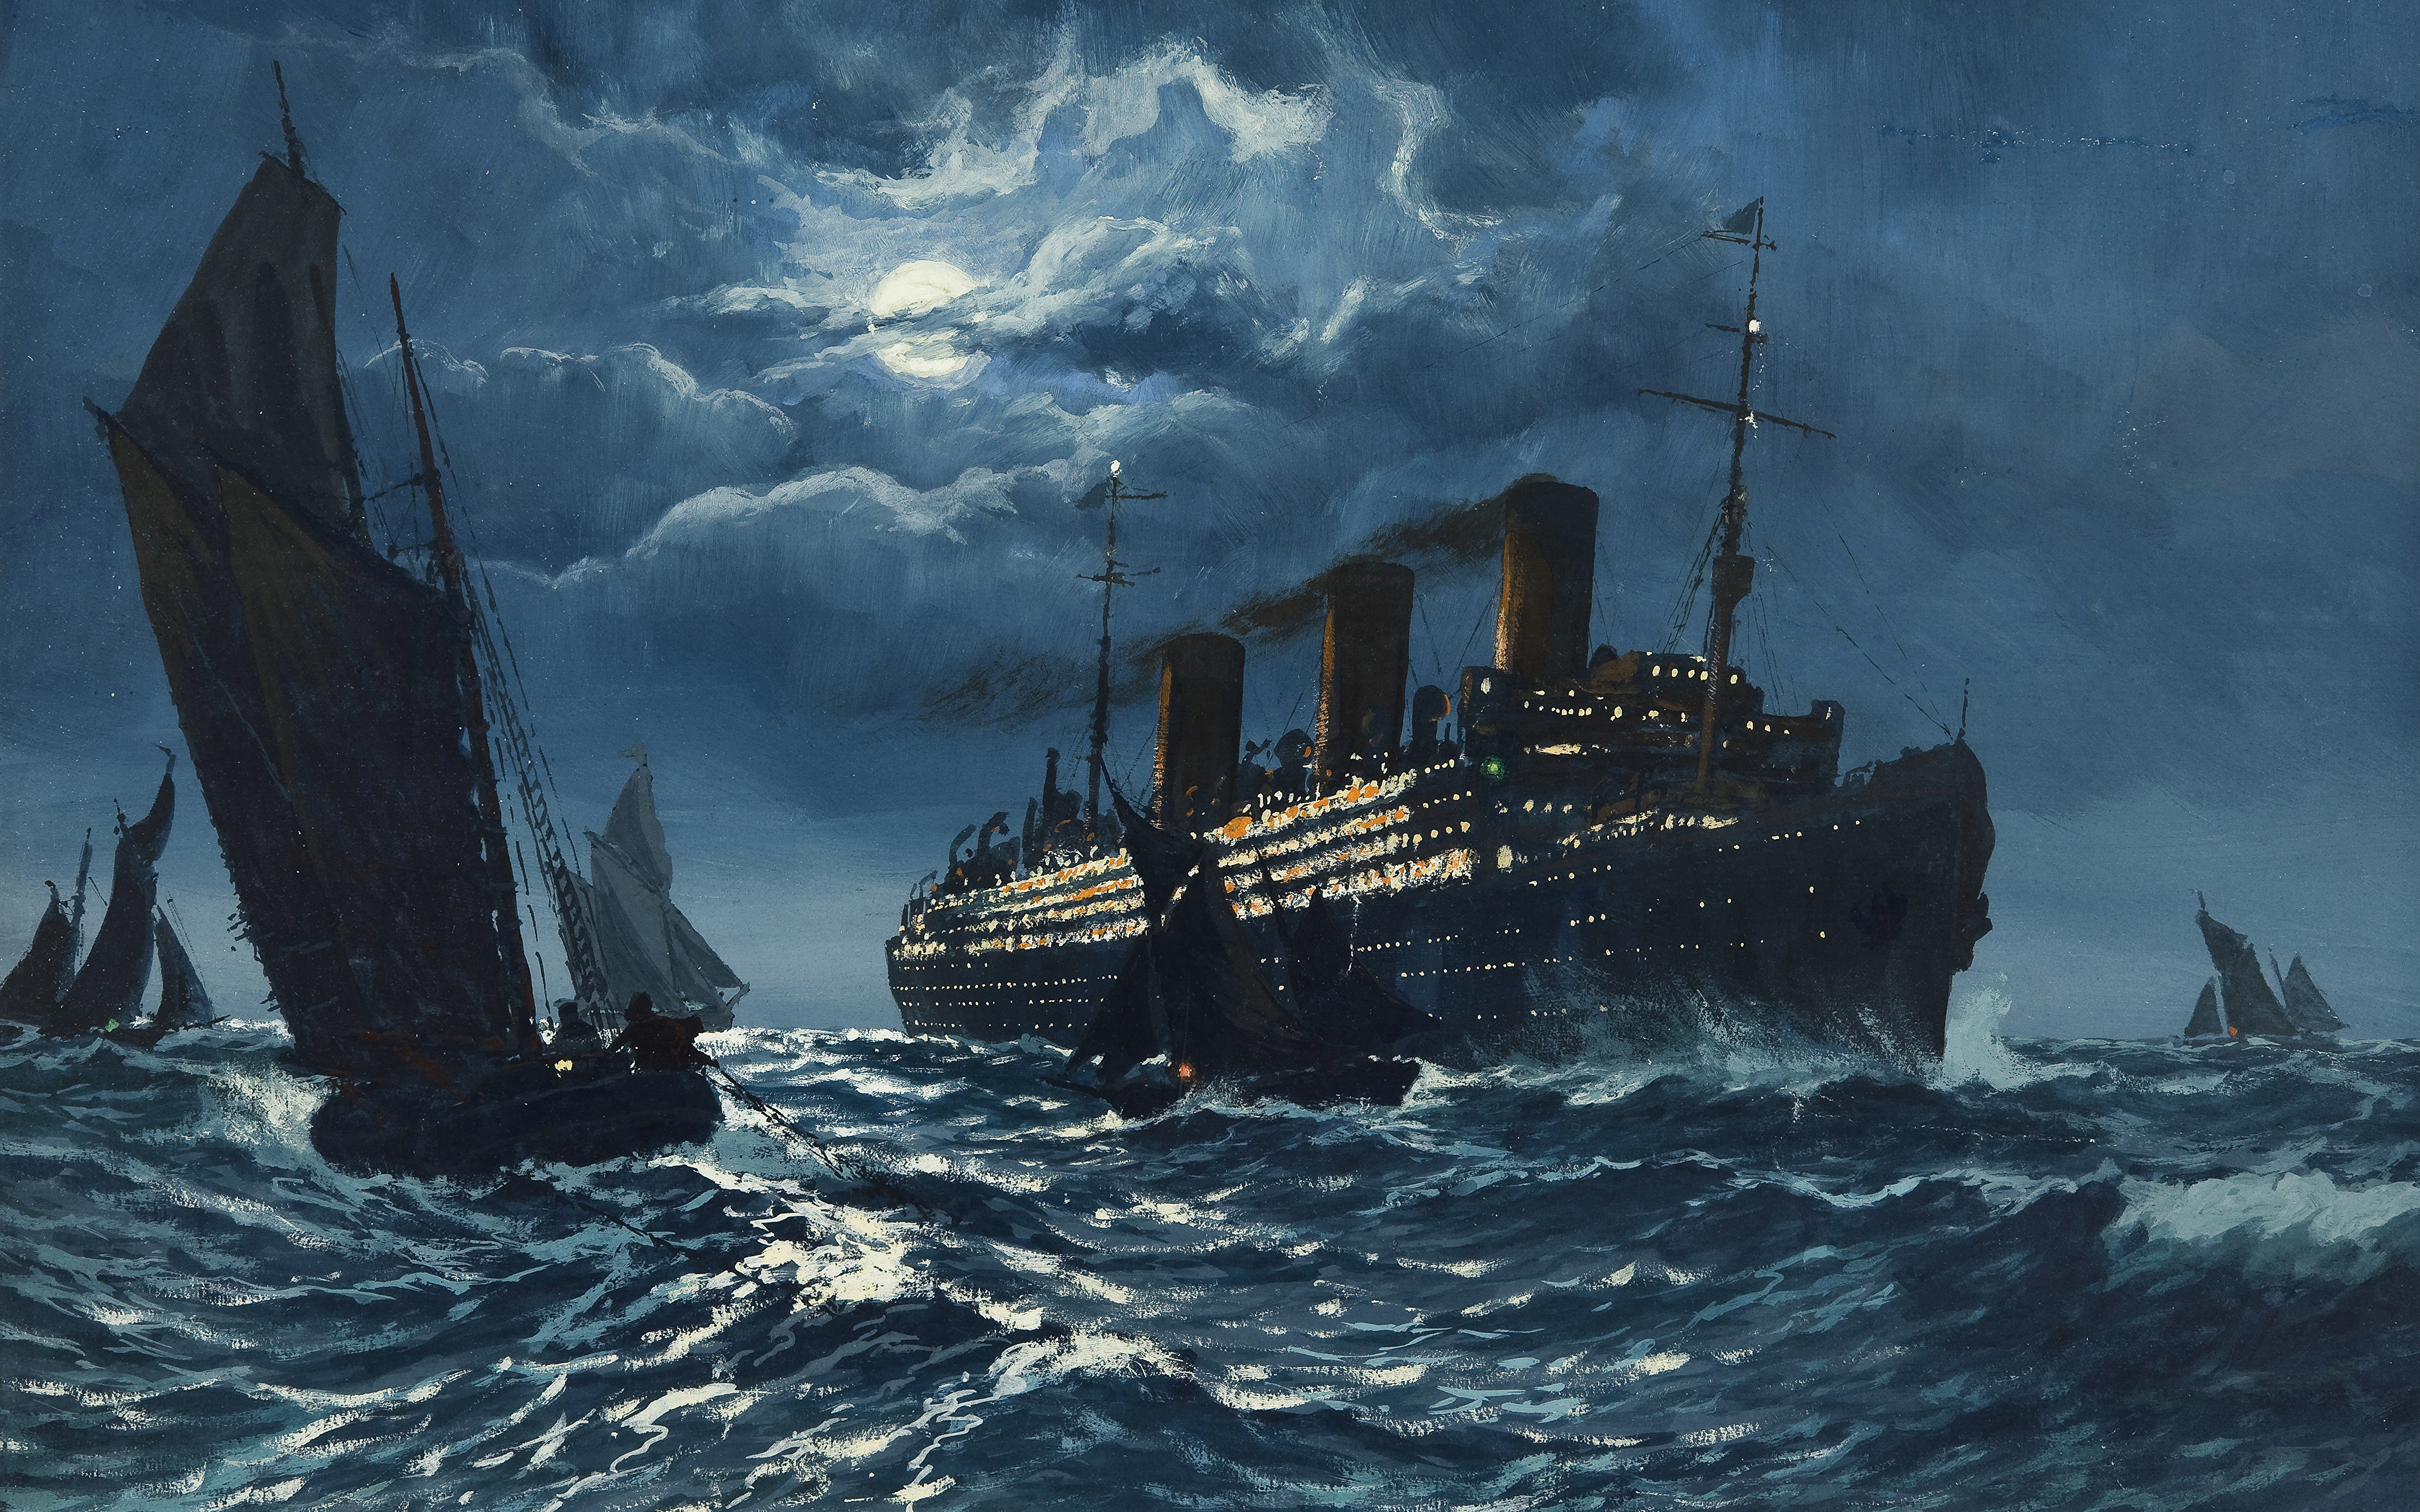 壁紙 3840x2400 船 描かれた壁紙 絵画 海 波 クルーズ船 Adolf Bock ダウンロード 写真